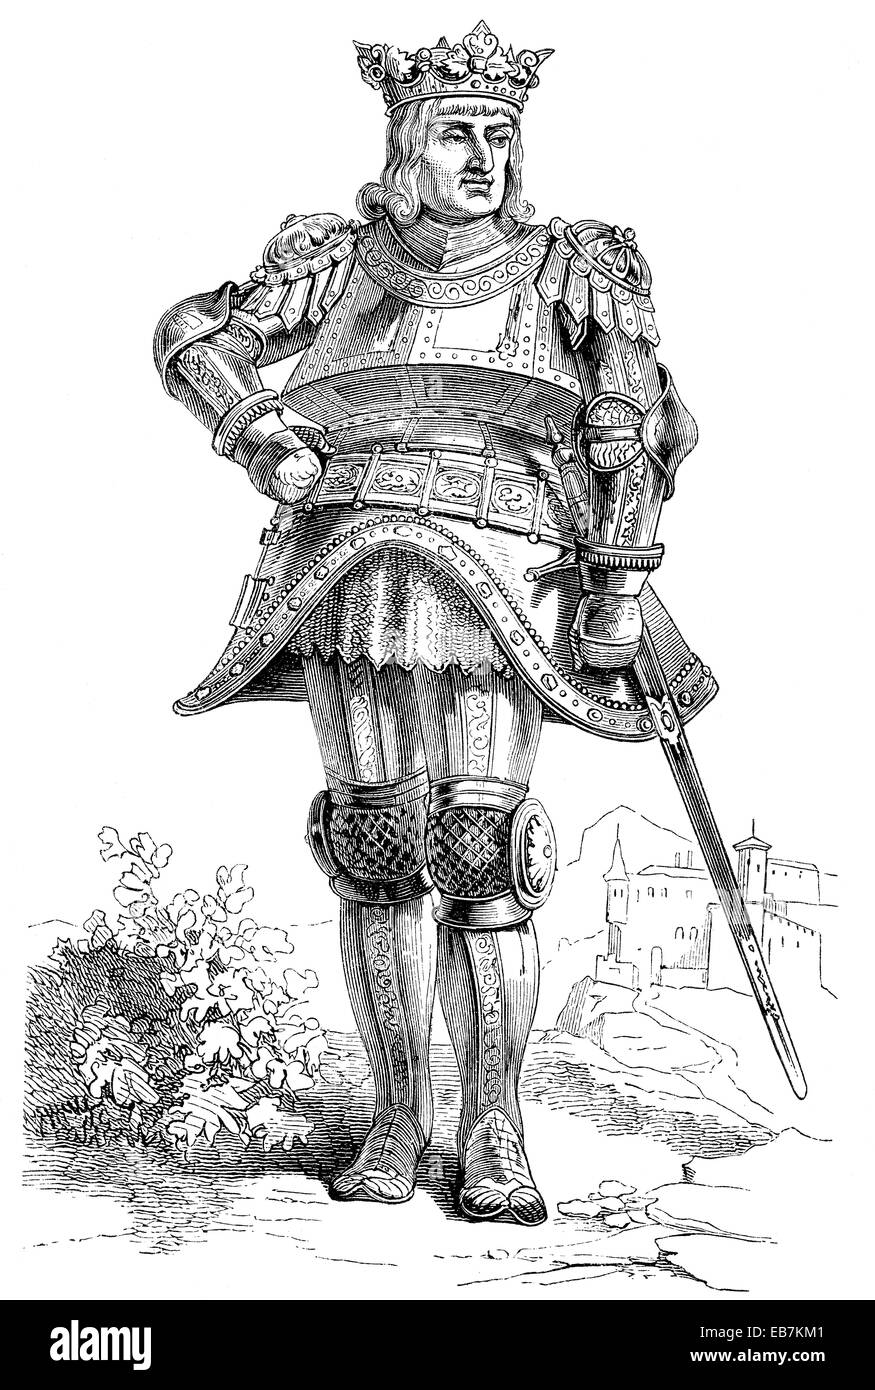 Rudolf I or Rudolf of Habsburg, 1218 - 1291, King of the Romans, Rudolf von Habsburg, 1218 - 1291, der erste römisch-deutsche Kö Stock Photo